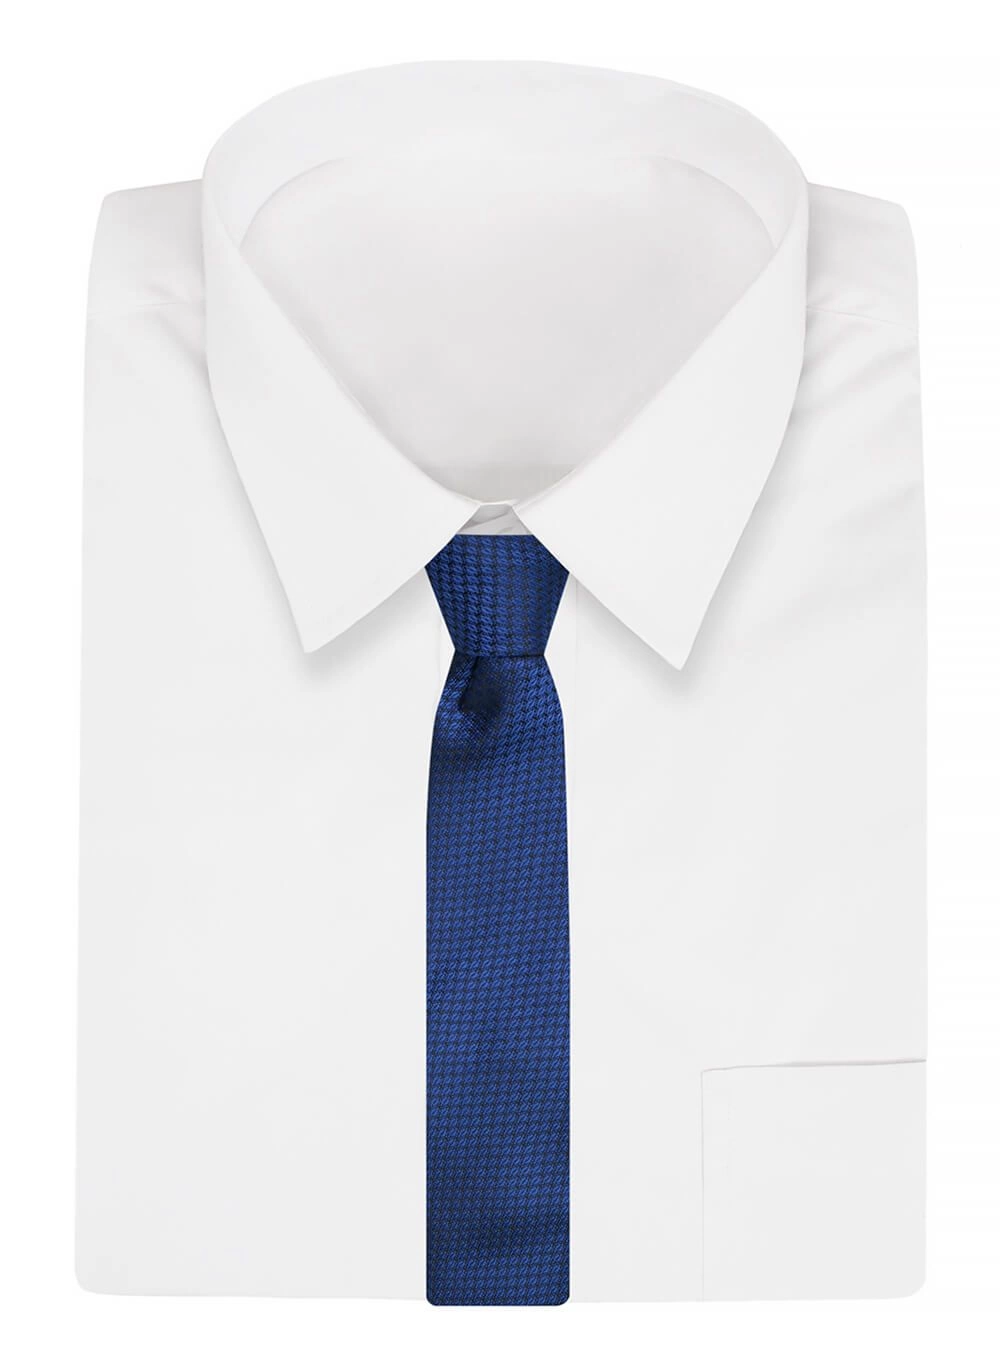 Krawat Alties (7 cm) - Ciemnoniebieski w Drobny Wzór